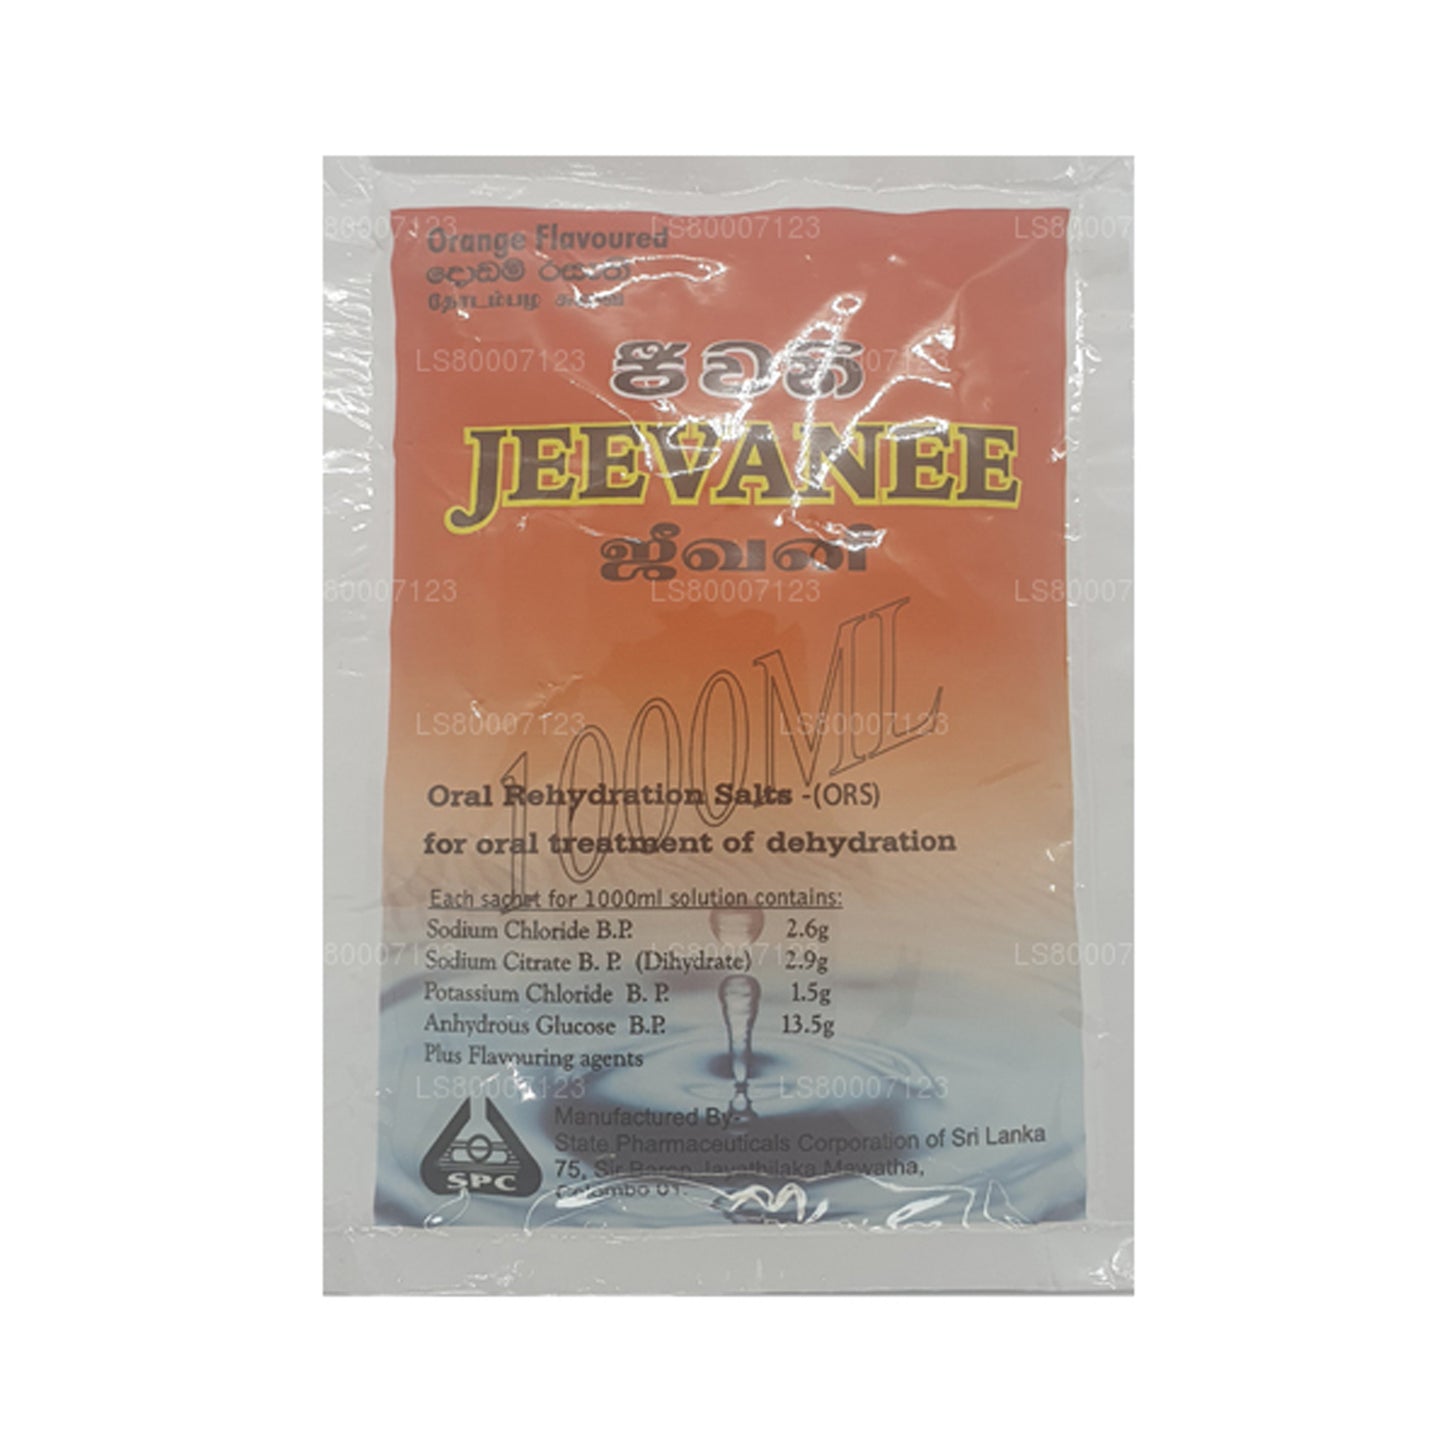 Jeevanee Portakal Aromalı Oral Rehidrasyon Tuzları (25 Poşet)